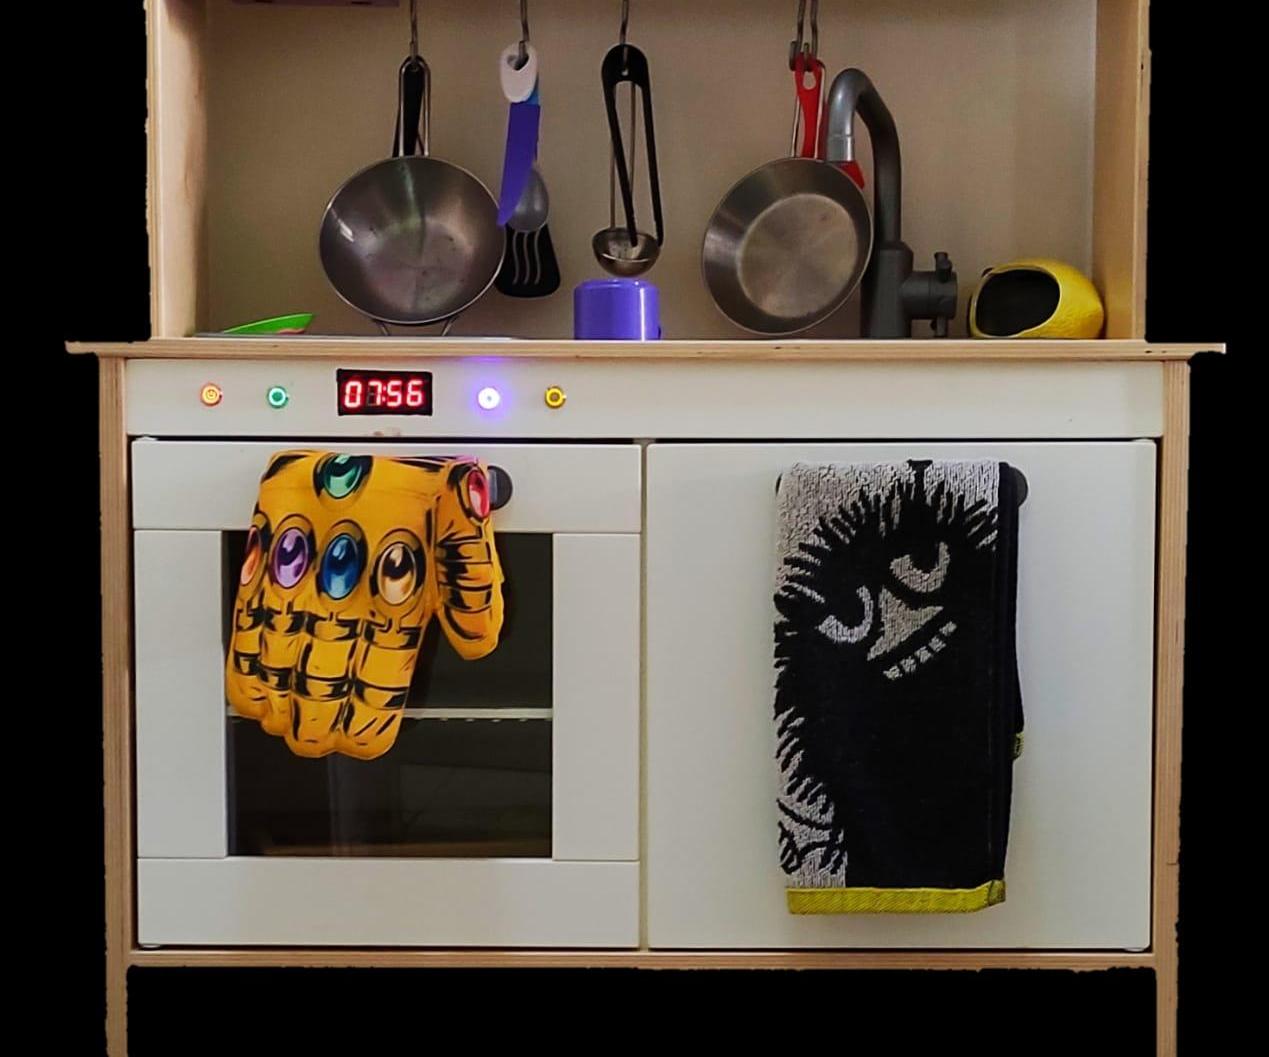 IKEA DUKTIG Kids Kitchen Oven Upgrade